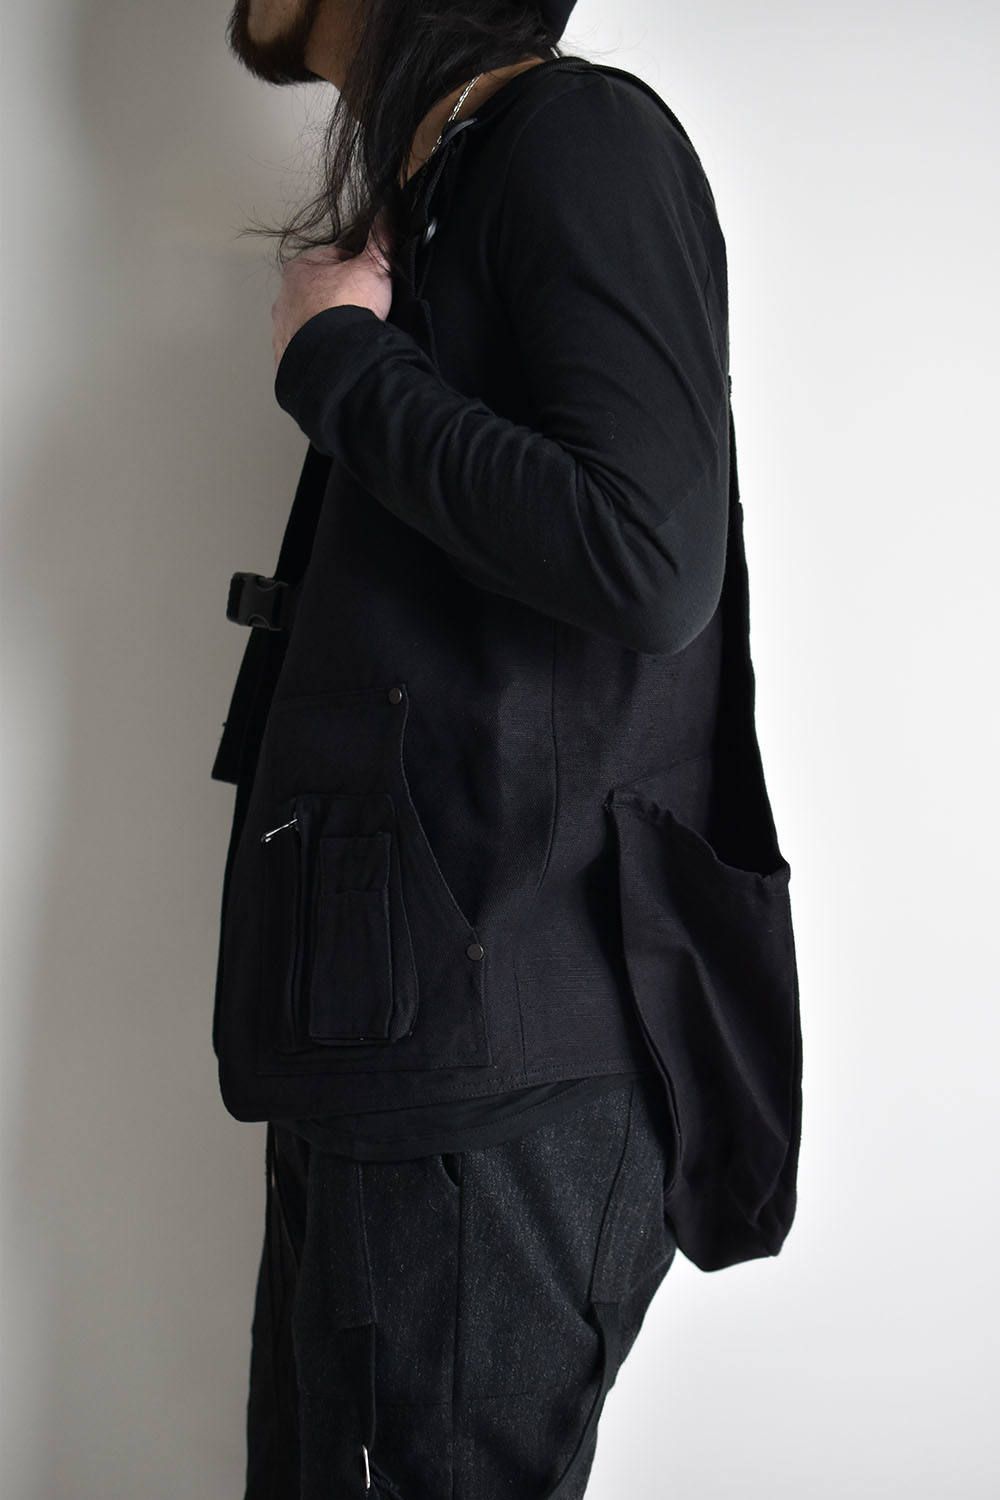 Tactical Vest"Black"/ タクティカルベスト"ブラック"